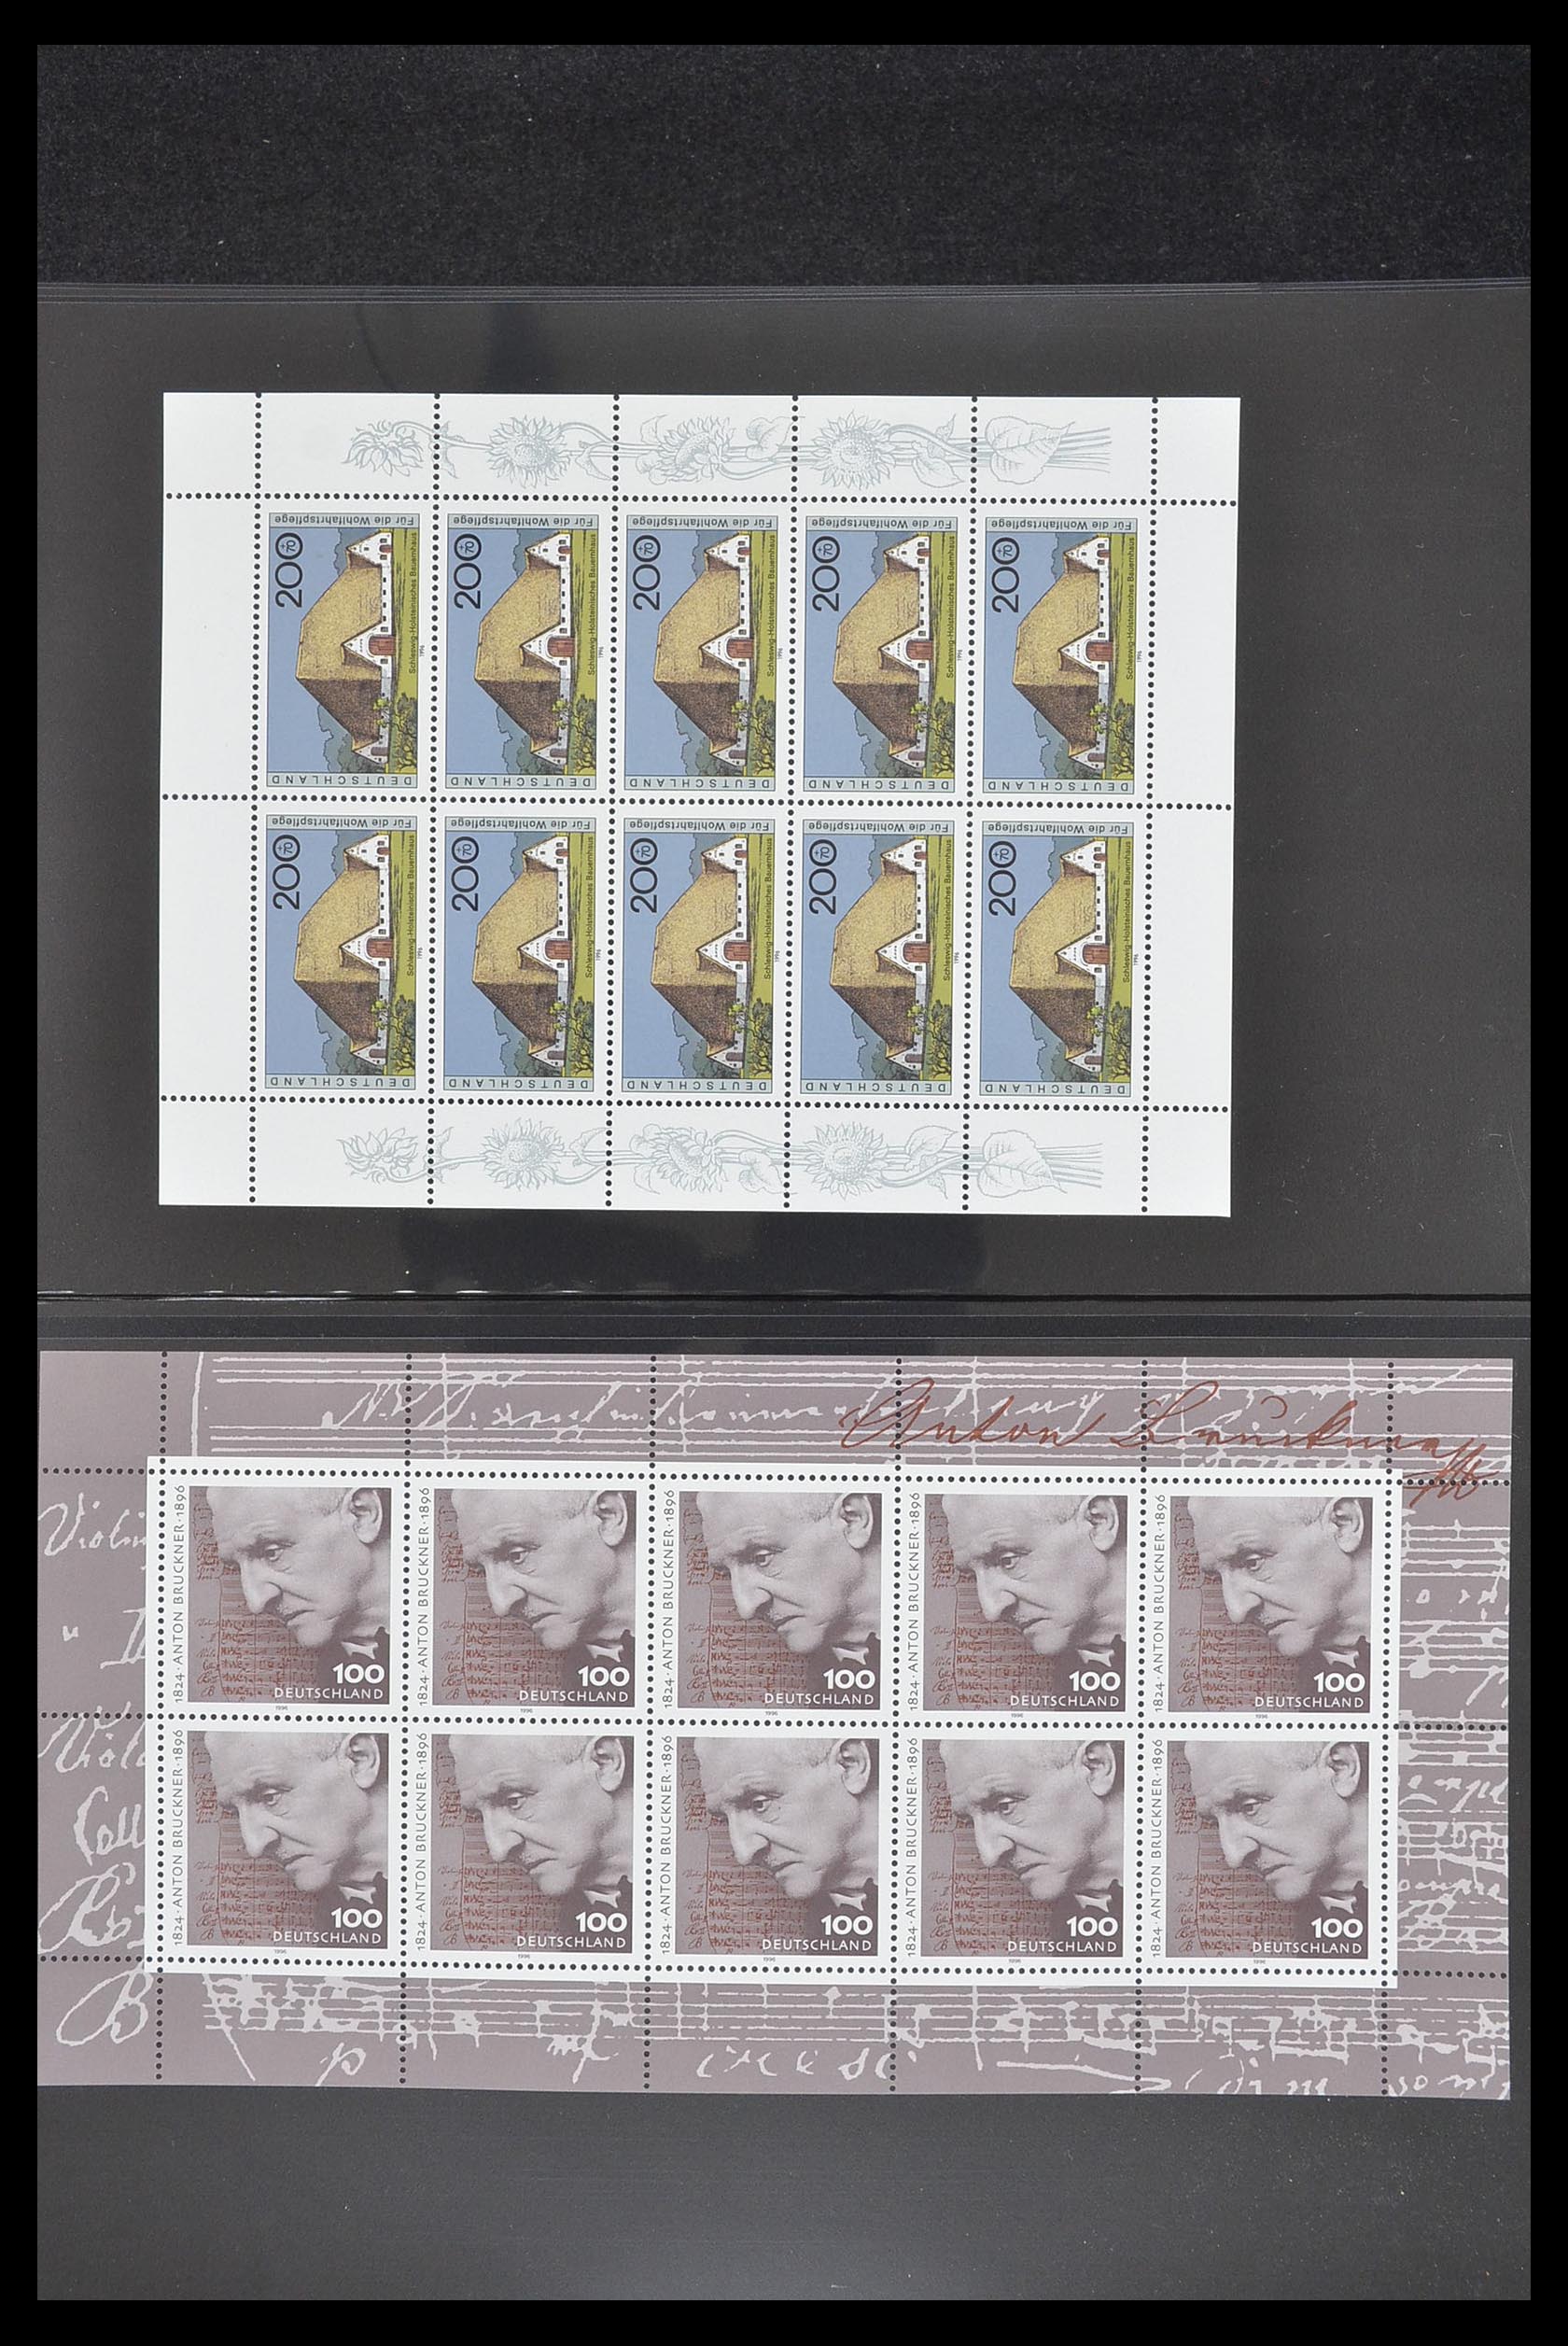 33936 061 - Stamp collection 33936 Bundespost kleinbogen 1994-2000.